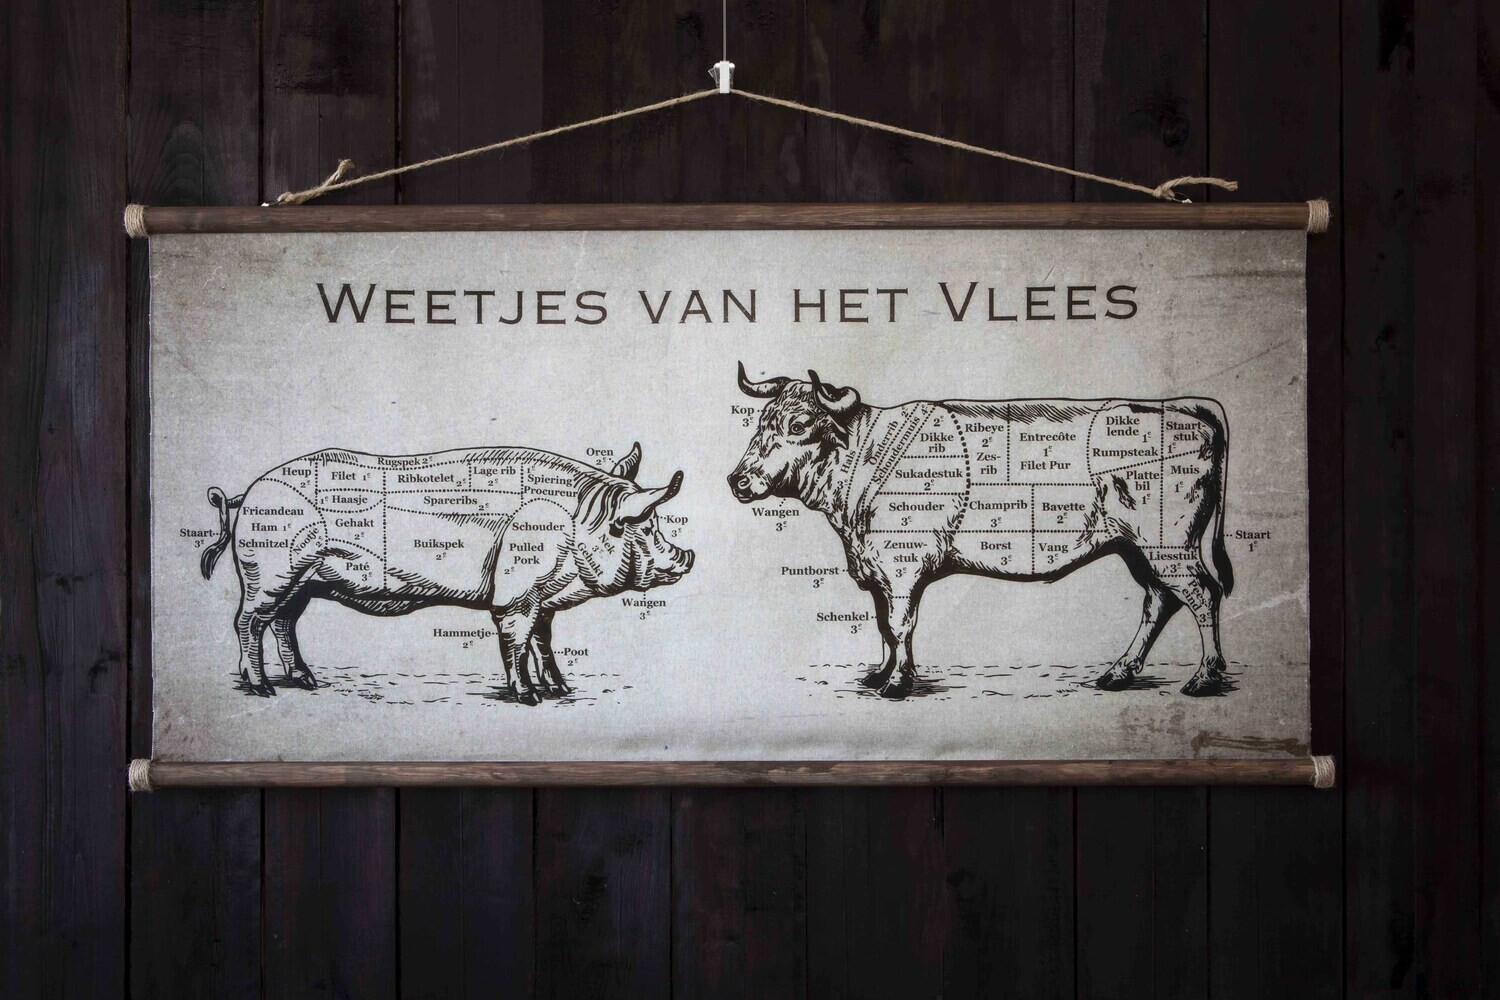 Weetjes van het Vlees Butchers Coffee Low 'Vlaamse versie'